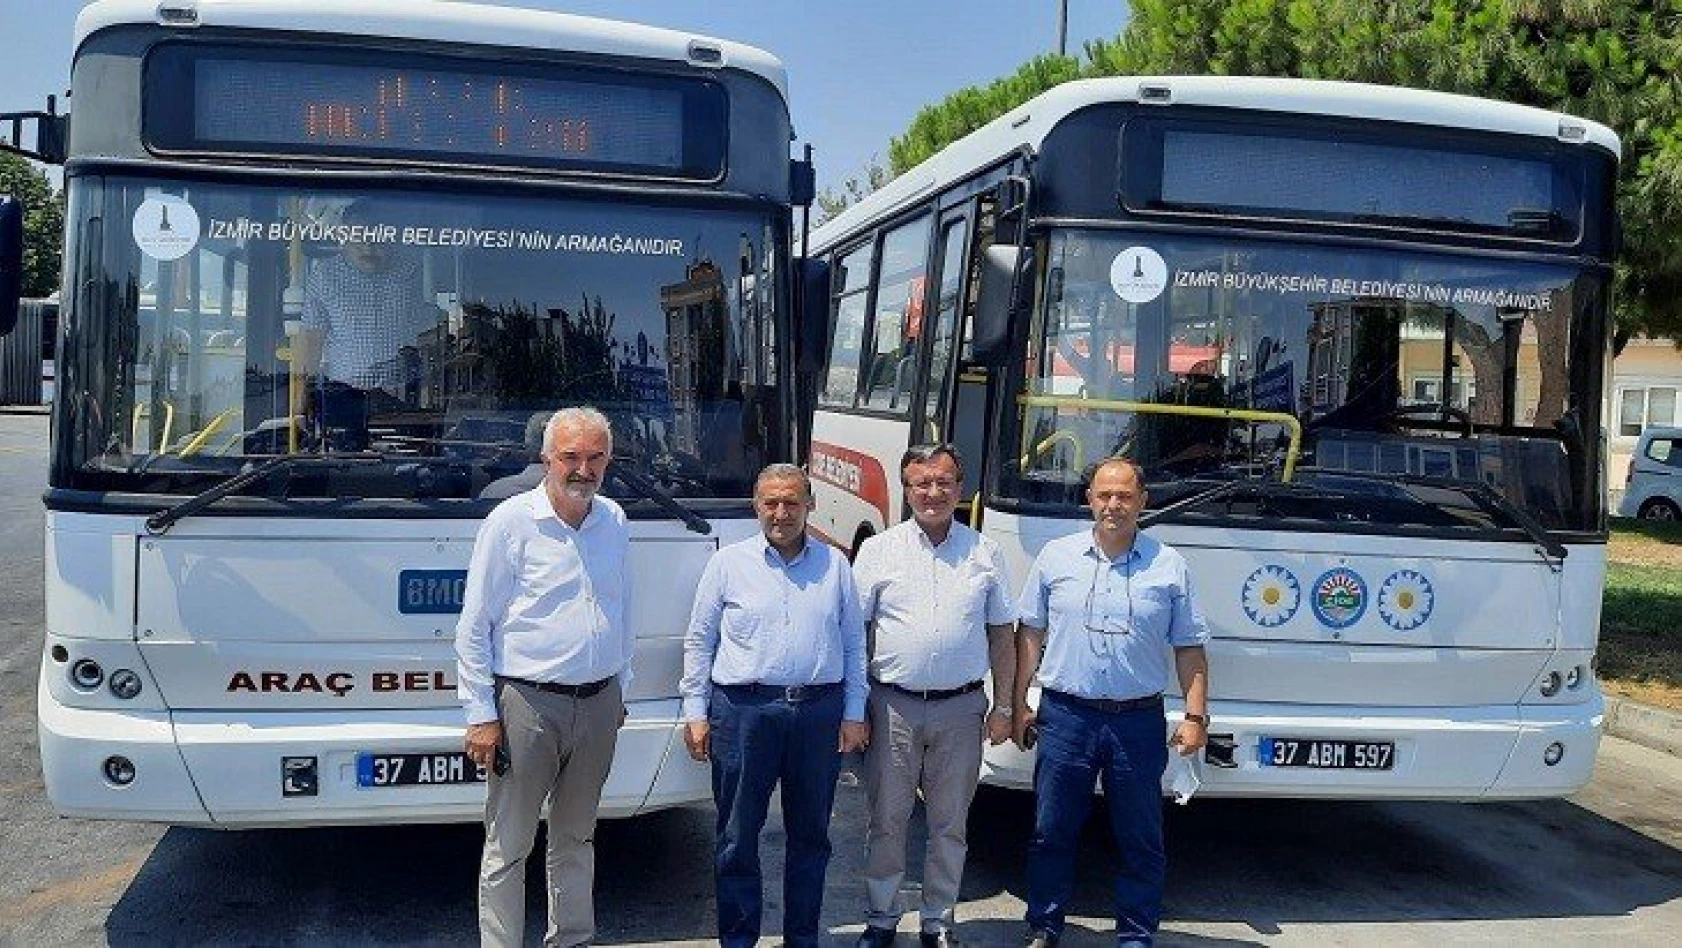 Araç, Daday ve Cide belediyelerine yolcu otobüsü